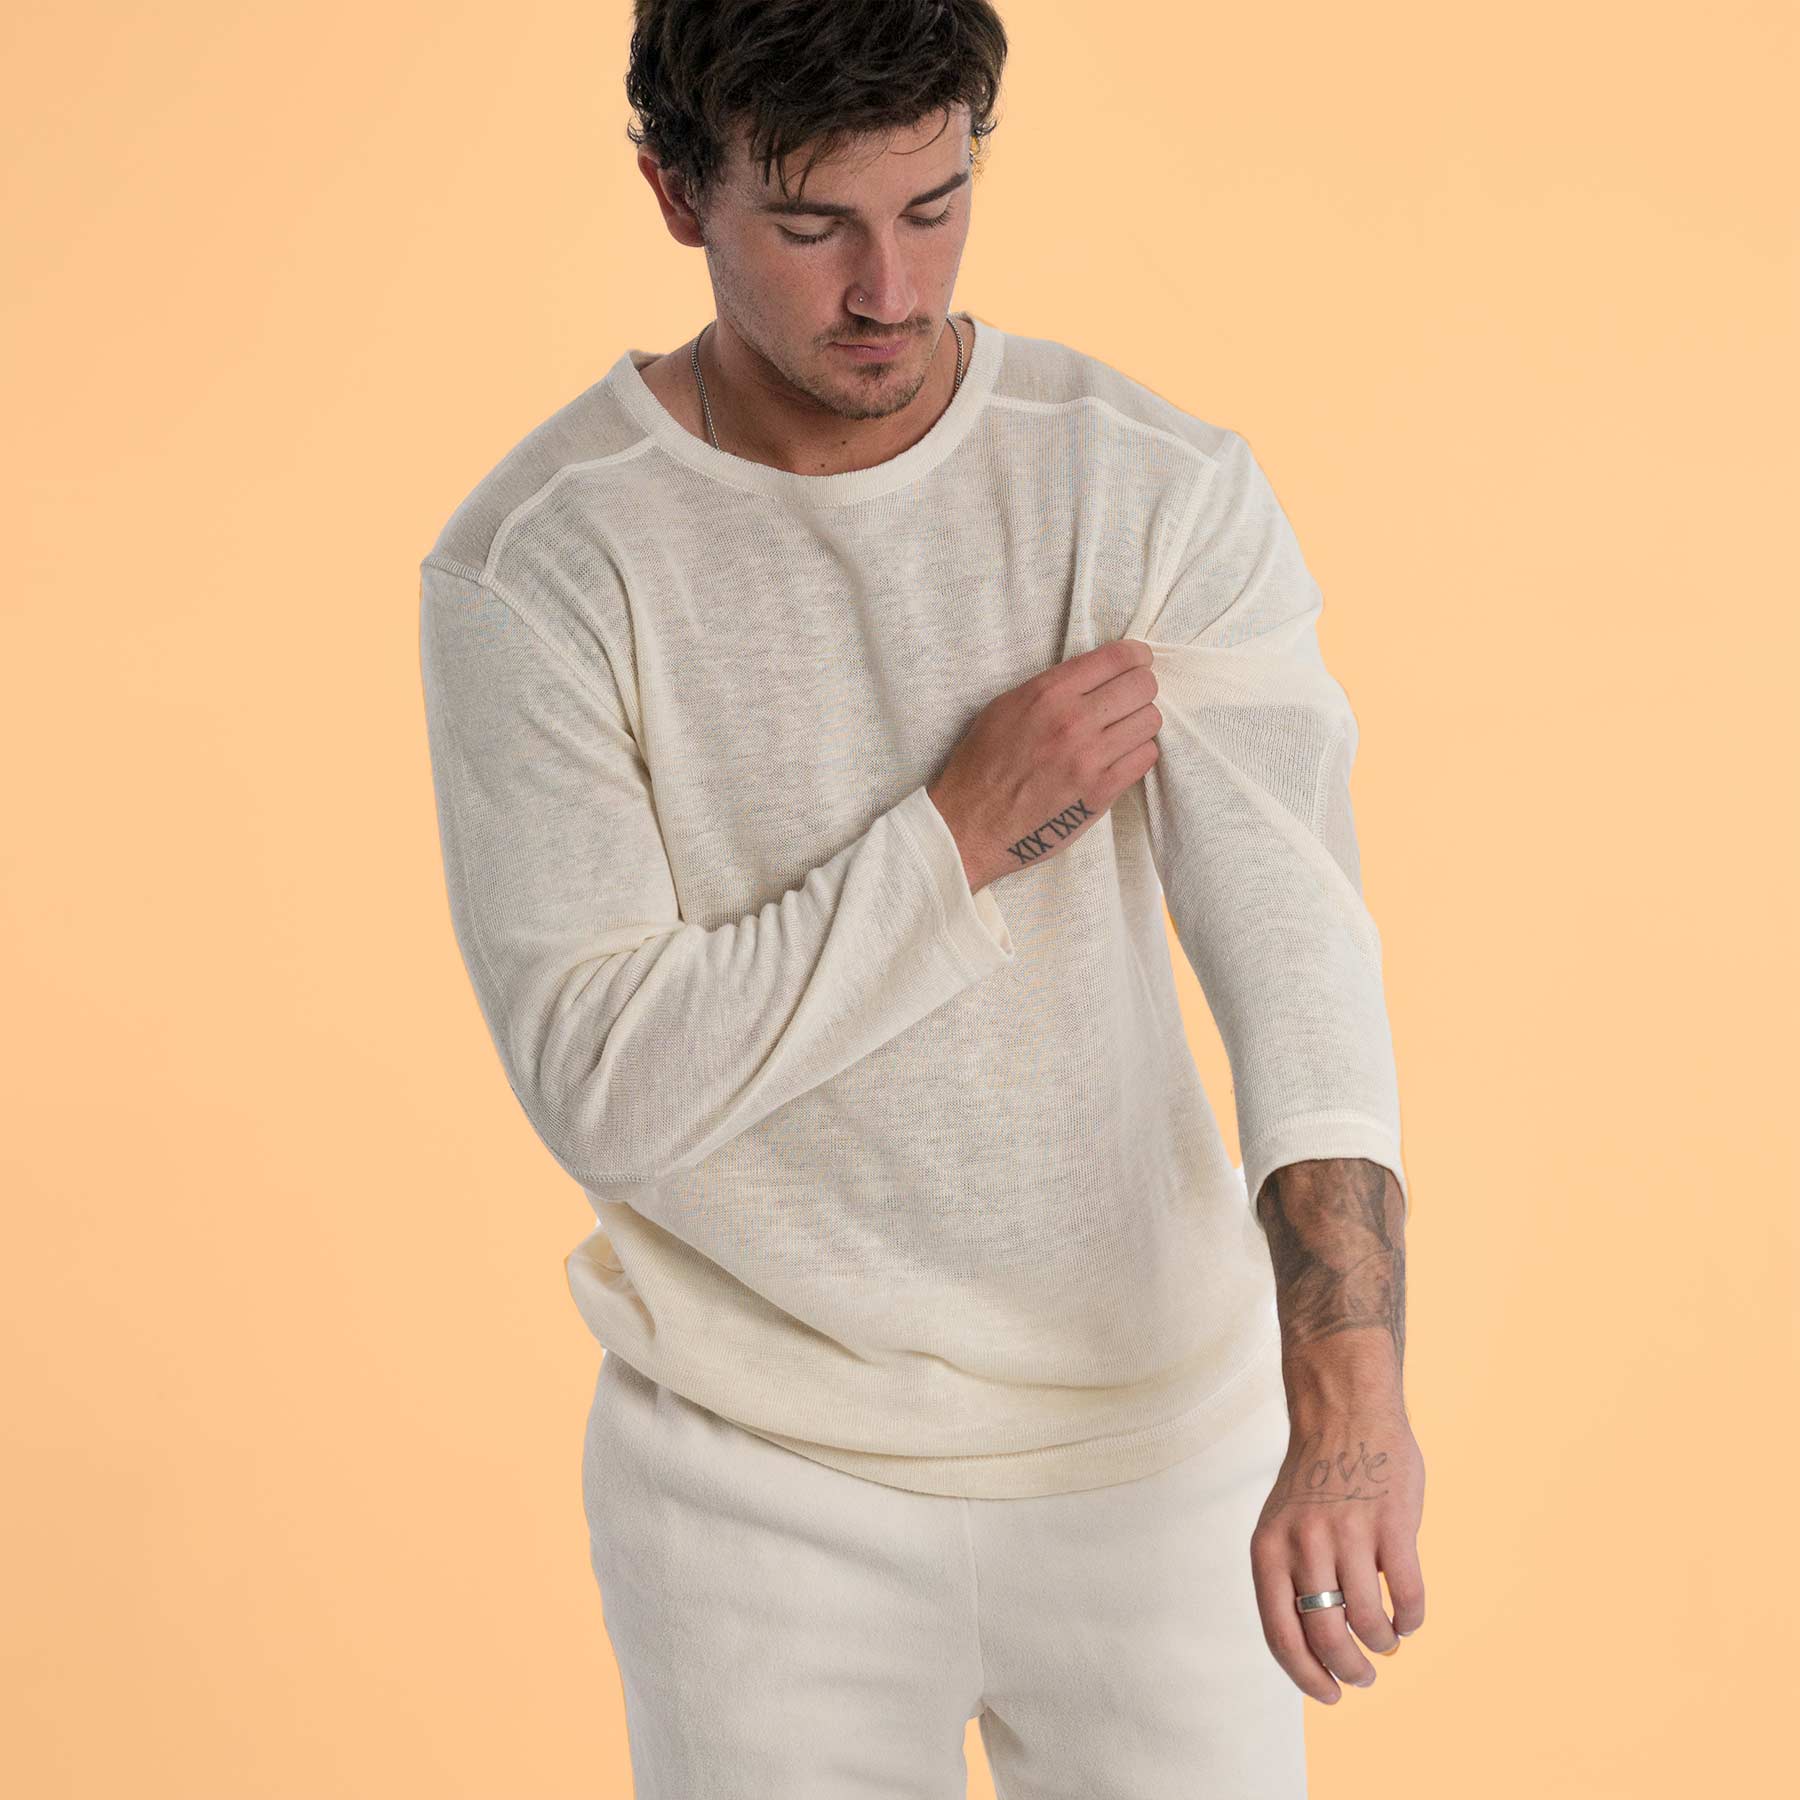 HEMPTON 100% Organic Hemp Long-sleeve T-shirt Pullover